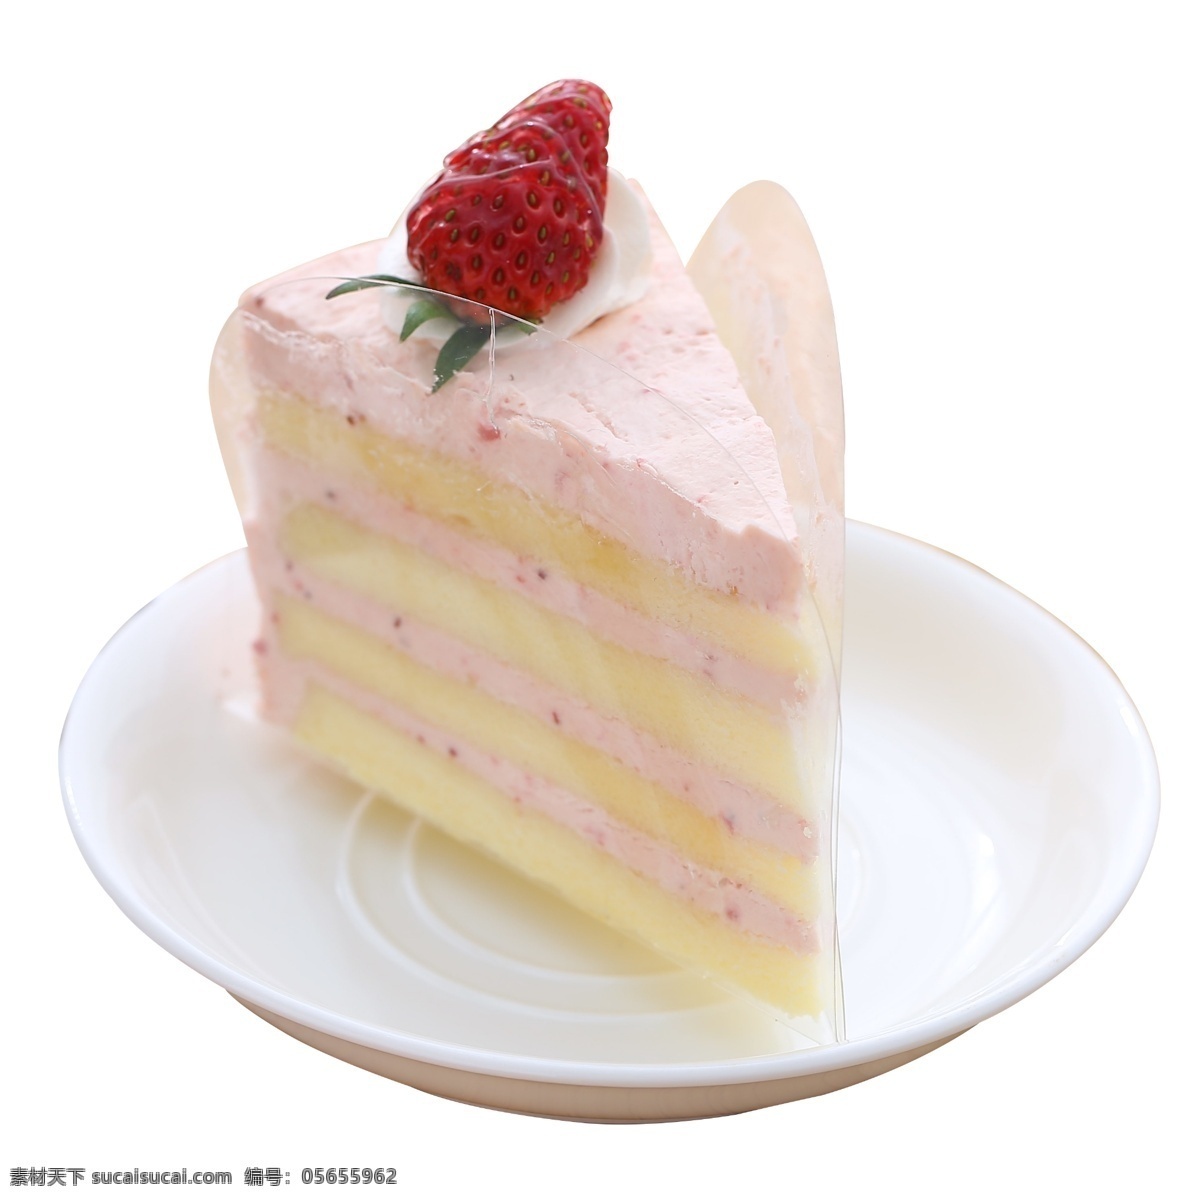 生日 草莓 奶油 蛋糕 奶油蛋糕 生日蛋糕 草莓蛋糕 生日奶油蛋糕 盘子